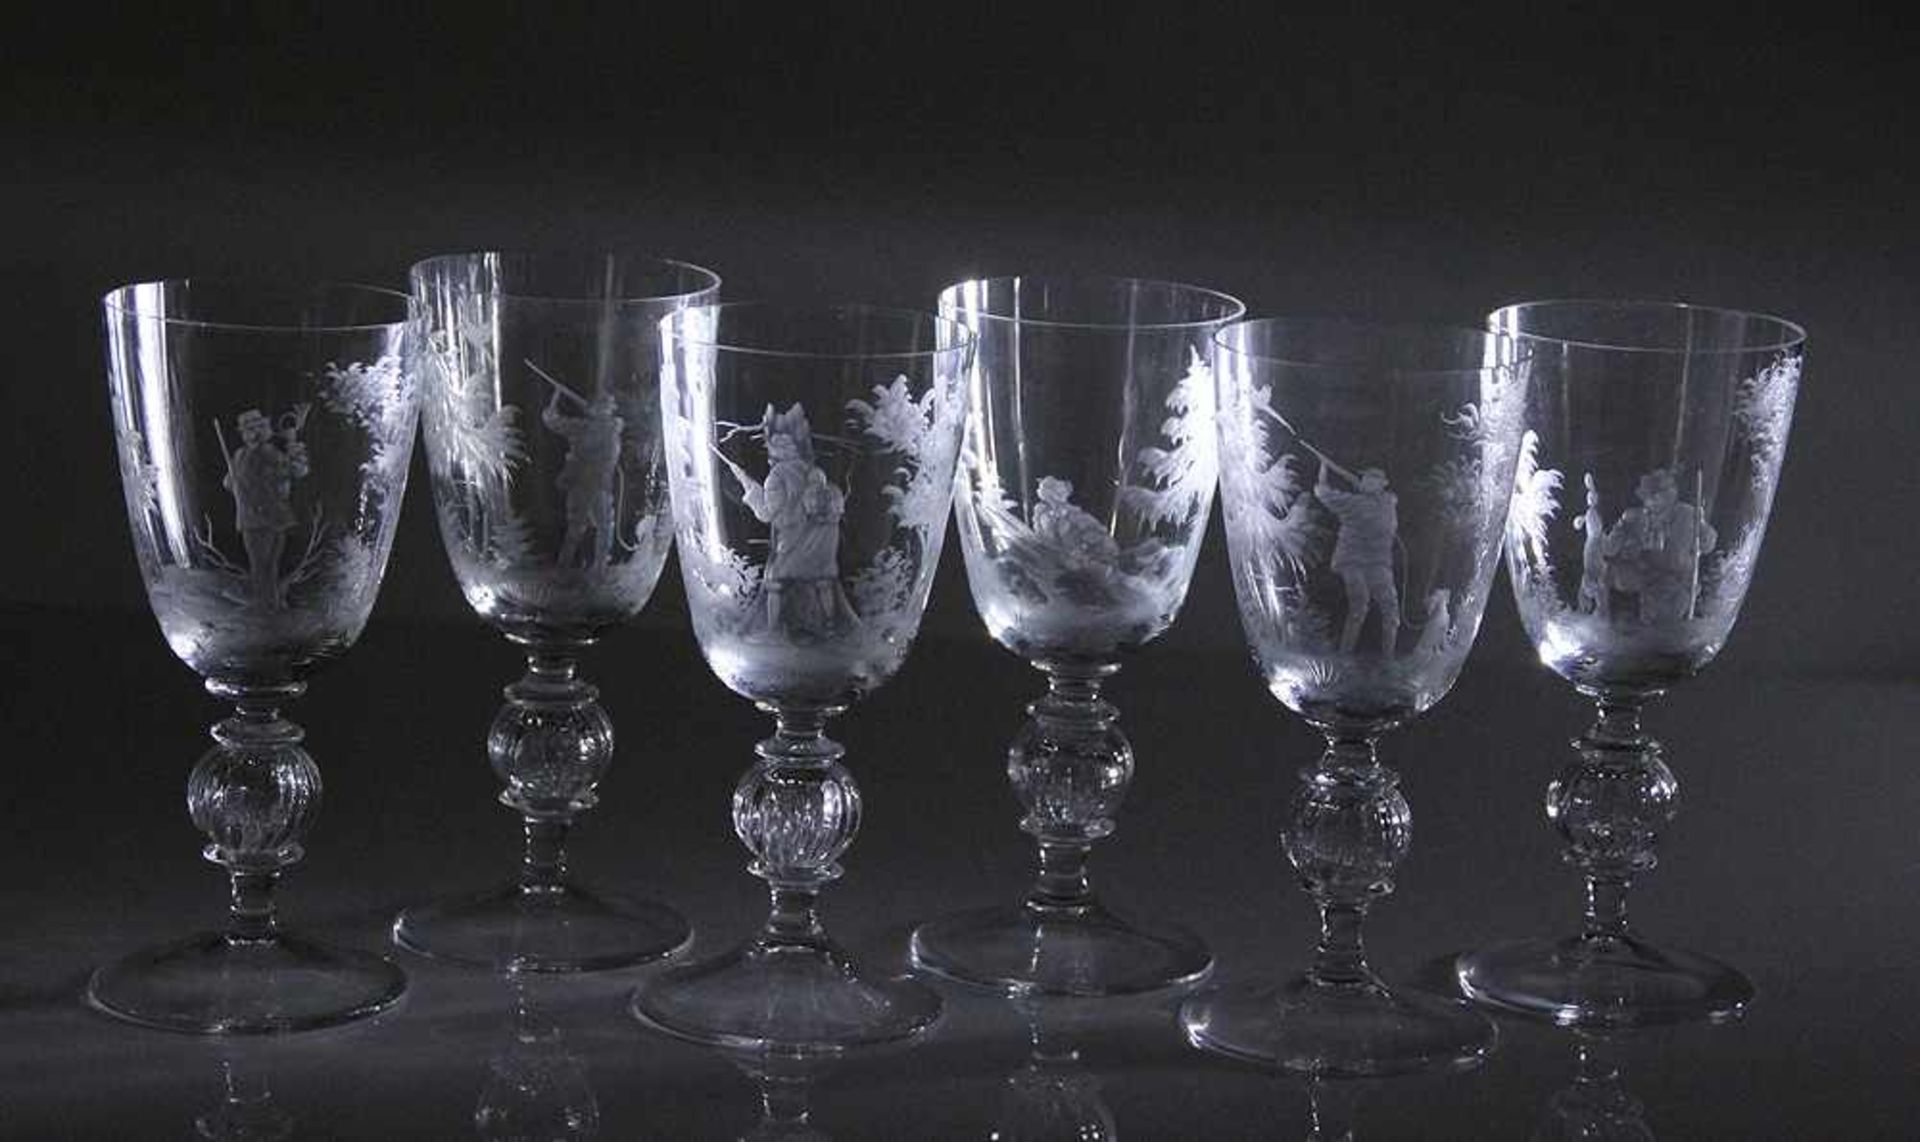 Sechs Weißweingläser.Theresienthal, 20. Jh. Serie von sechs Gläser, jagdlicher Dekor. H: 15